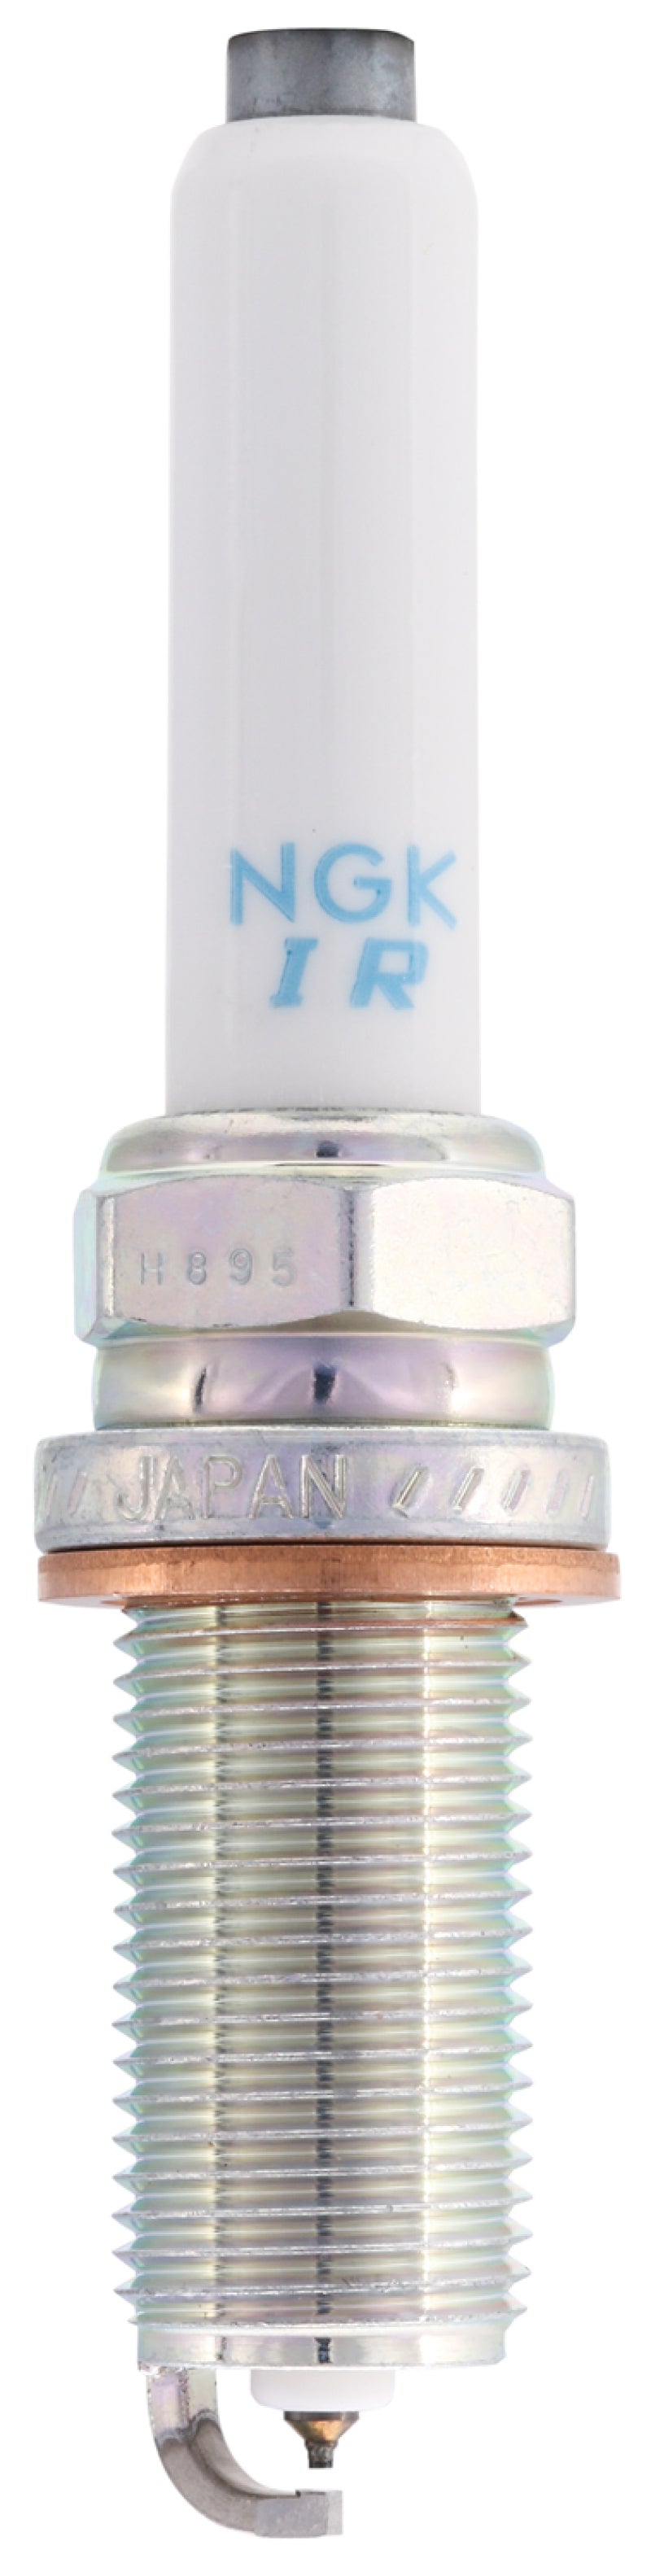 NGK Laser Iridium Spark Plug Box of 4.